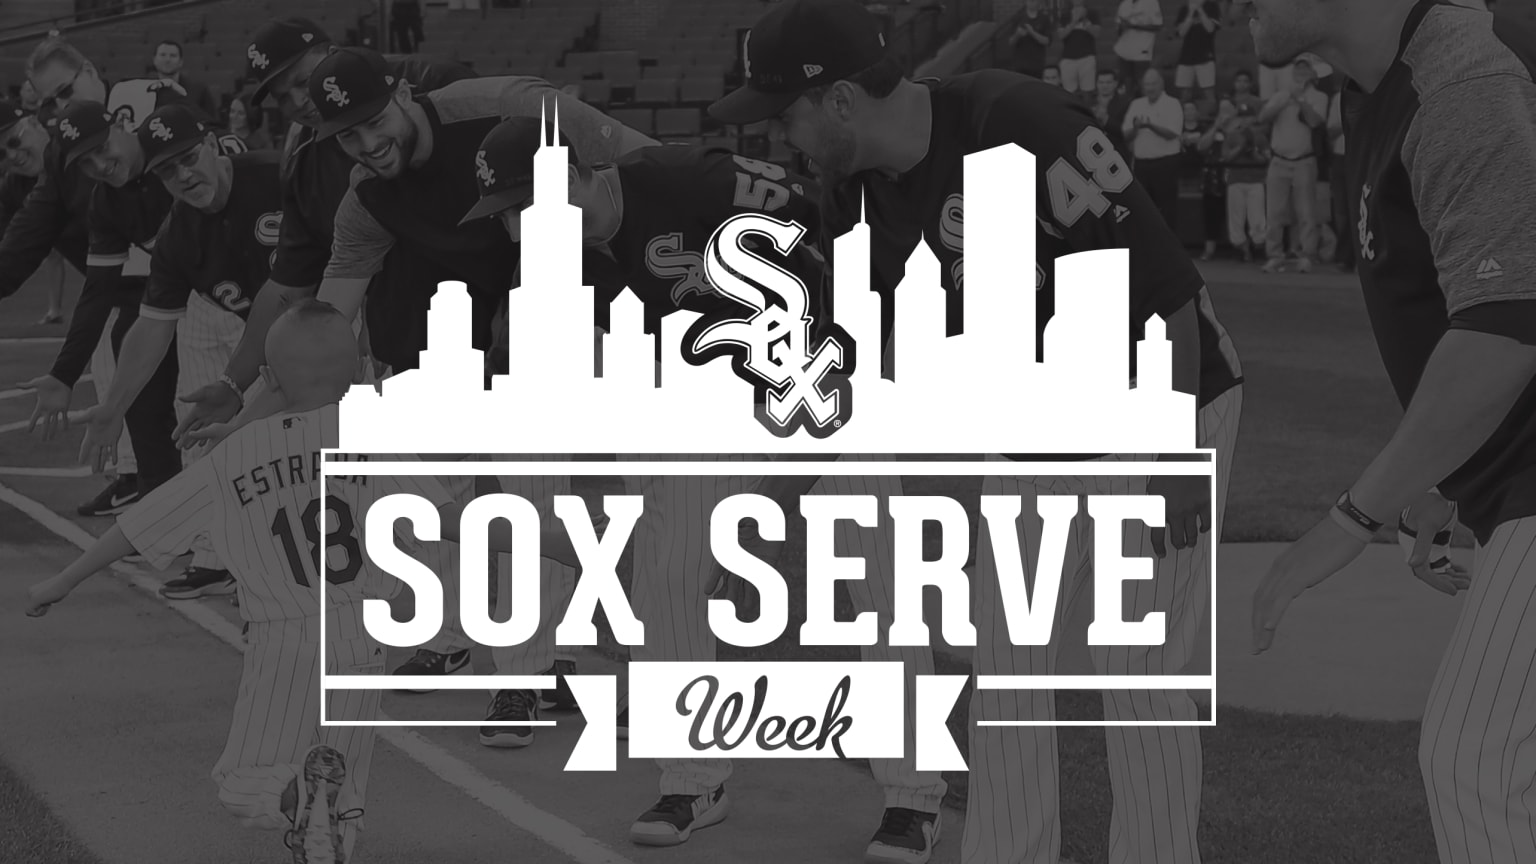 White Sox Charities (@soxcharities) / X